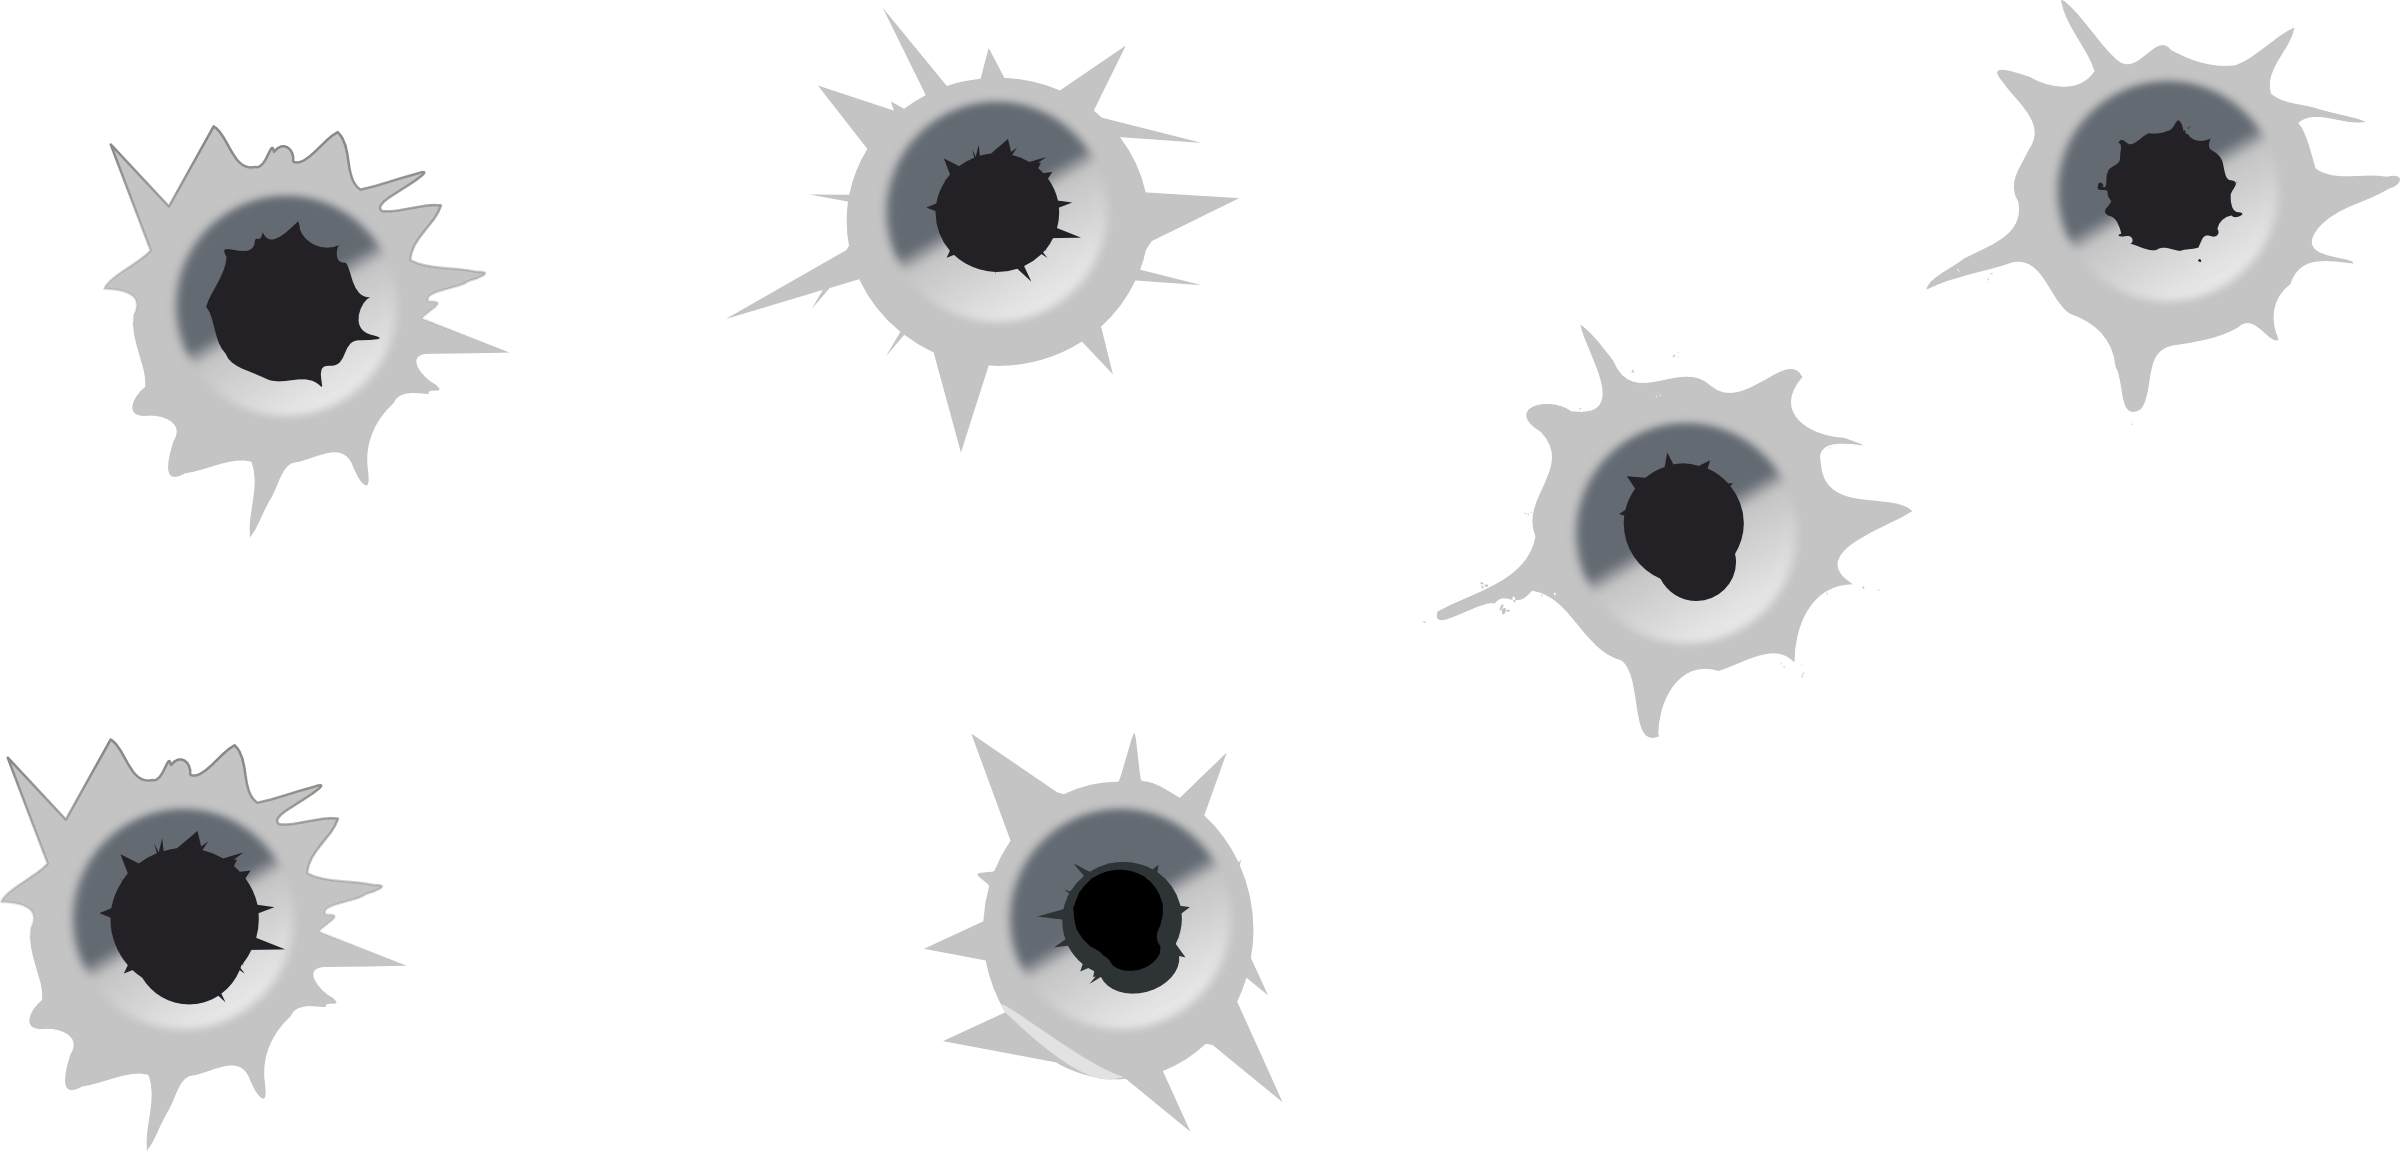 Bullet Holes PNG Image Transparent Background